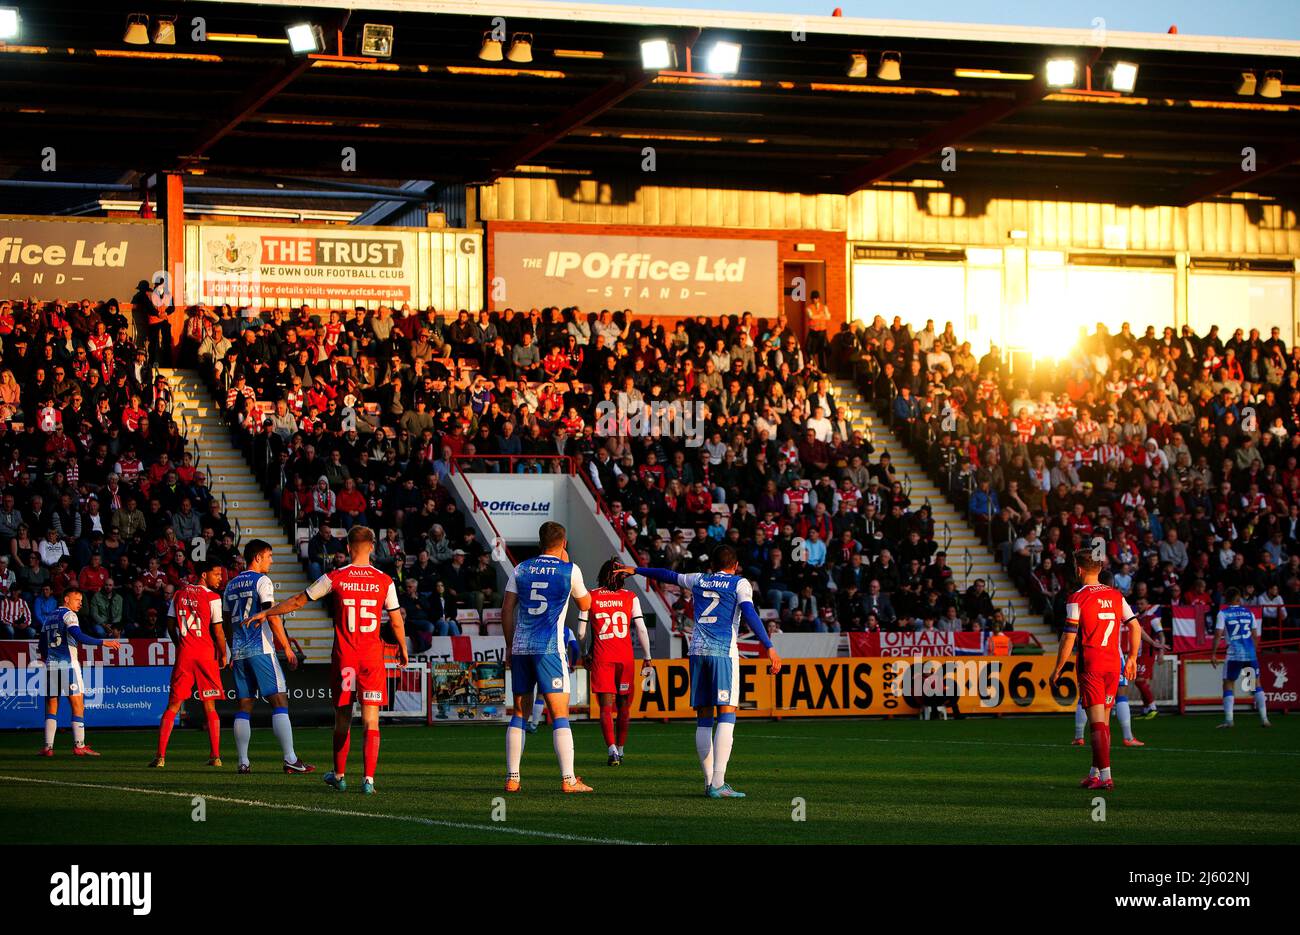 Allgemeiner Blick auf die Action beim Sonnenuntergang während des Spiels der Sky Bet League Two im St James Park, Exeter. Bilddatum: Dienstag, 26. April 2022. Stockfoto